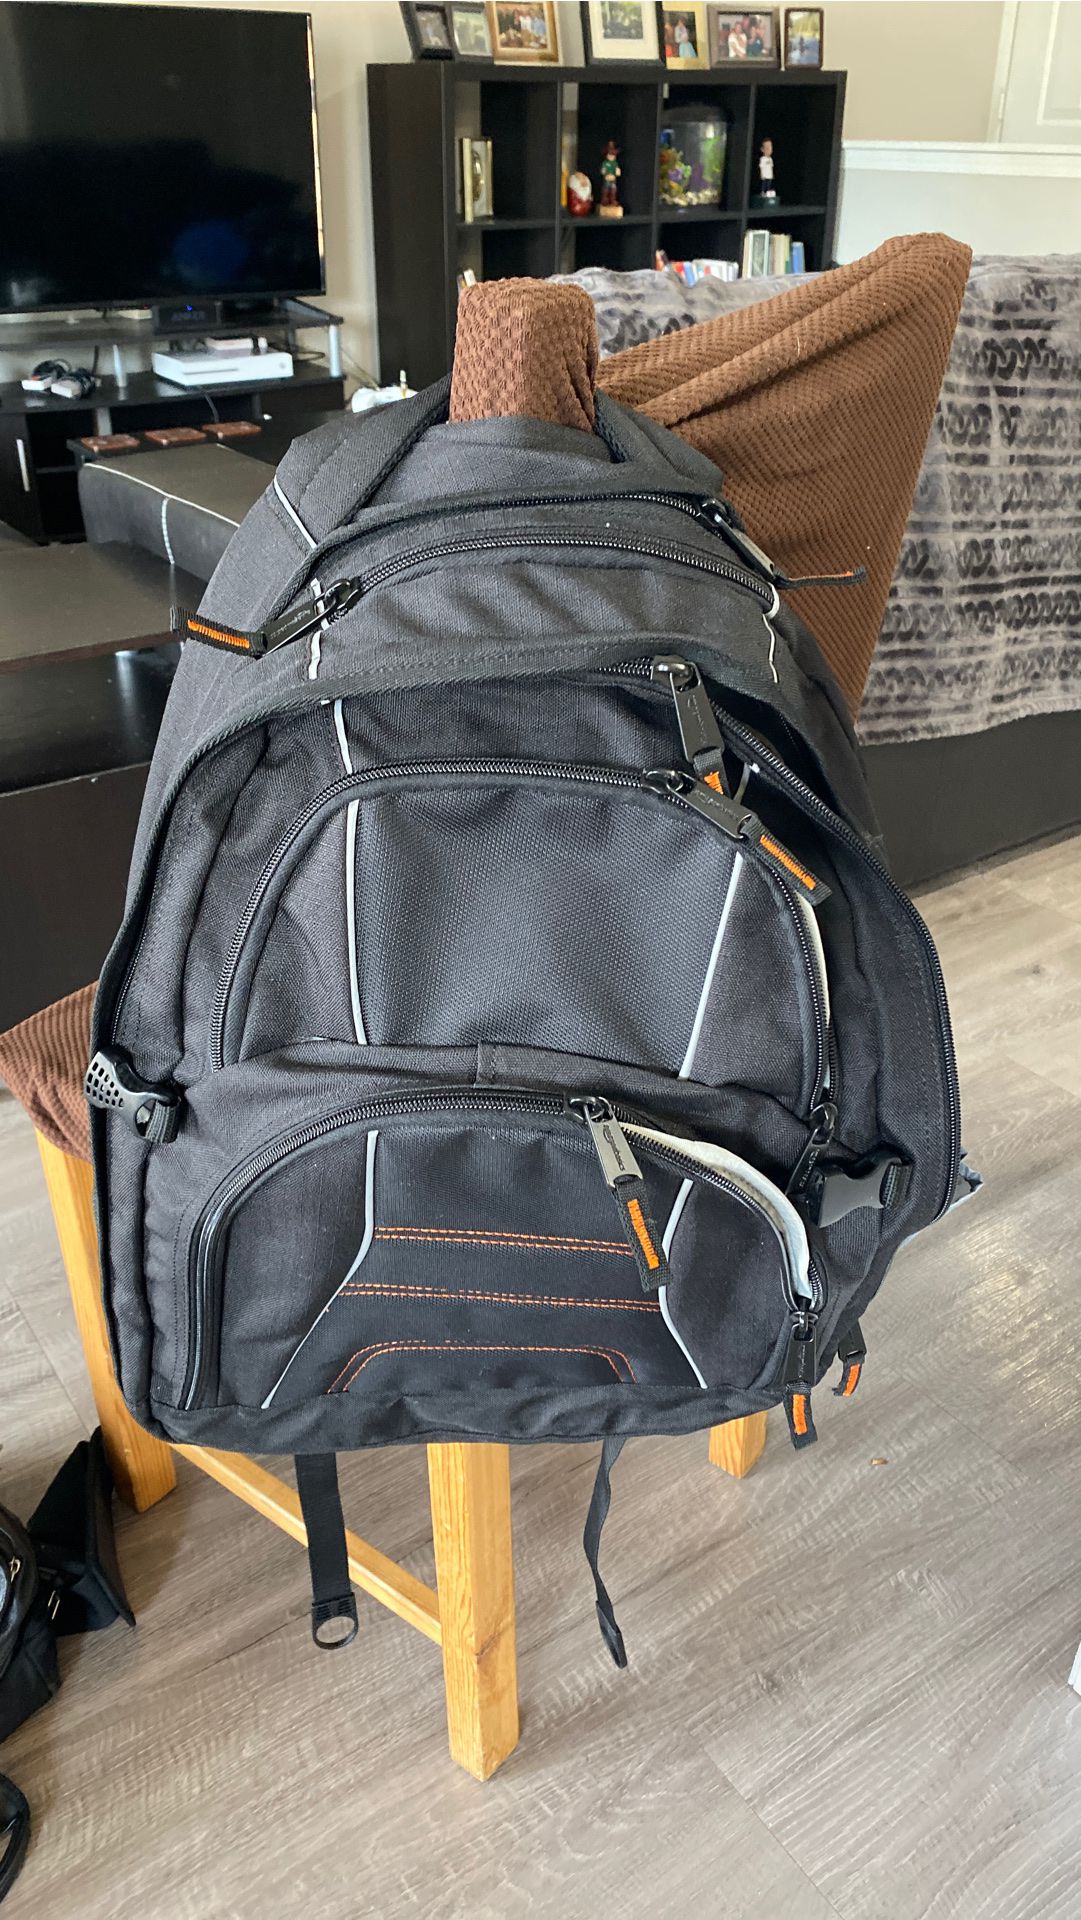 Amazon Basics laptop backpack